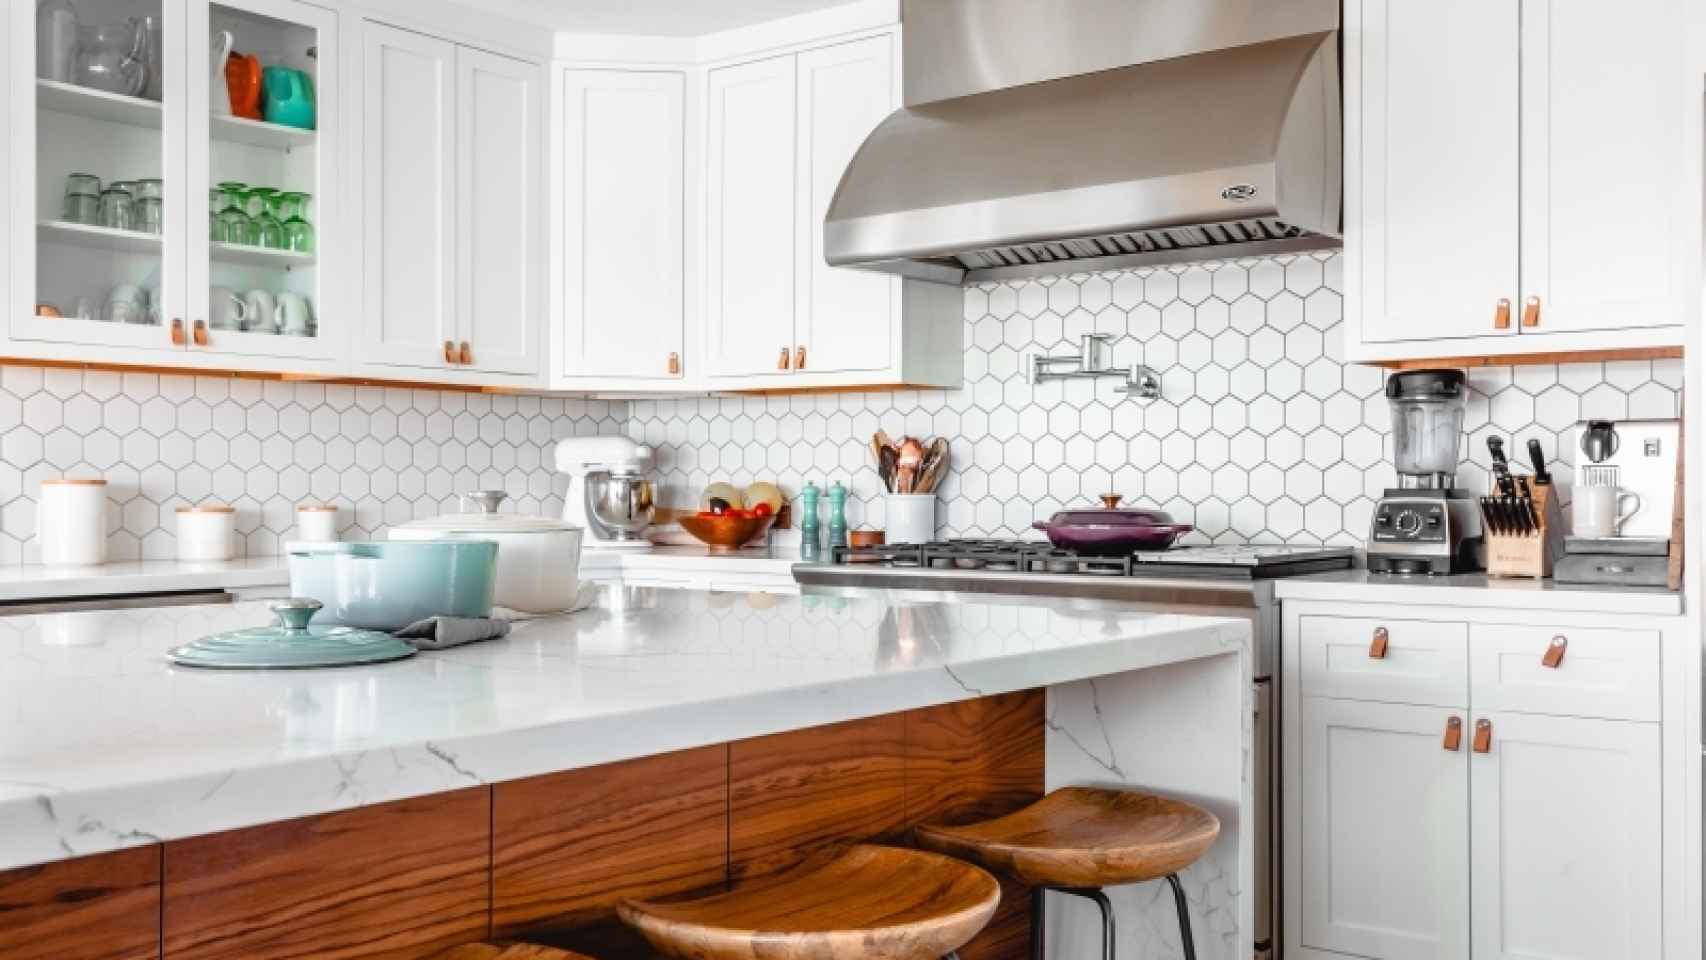 Descubre cómo limpiar los azulejos de cocina en 6 pasos!